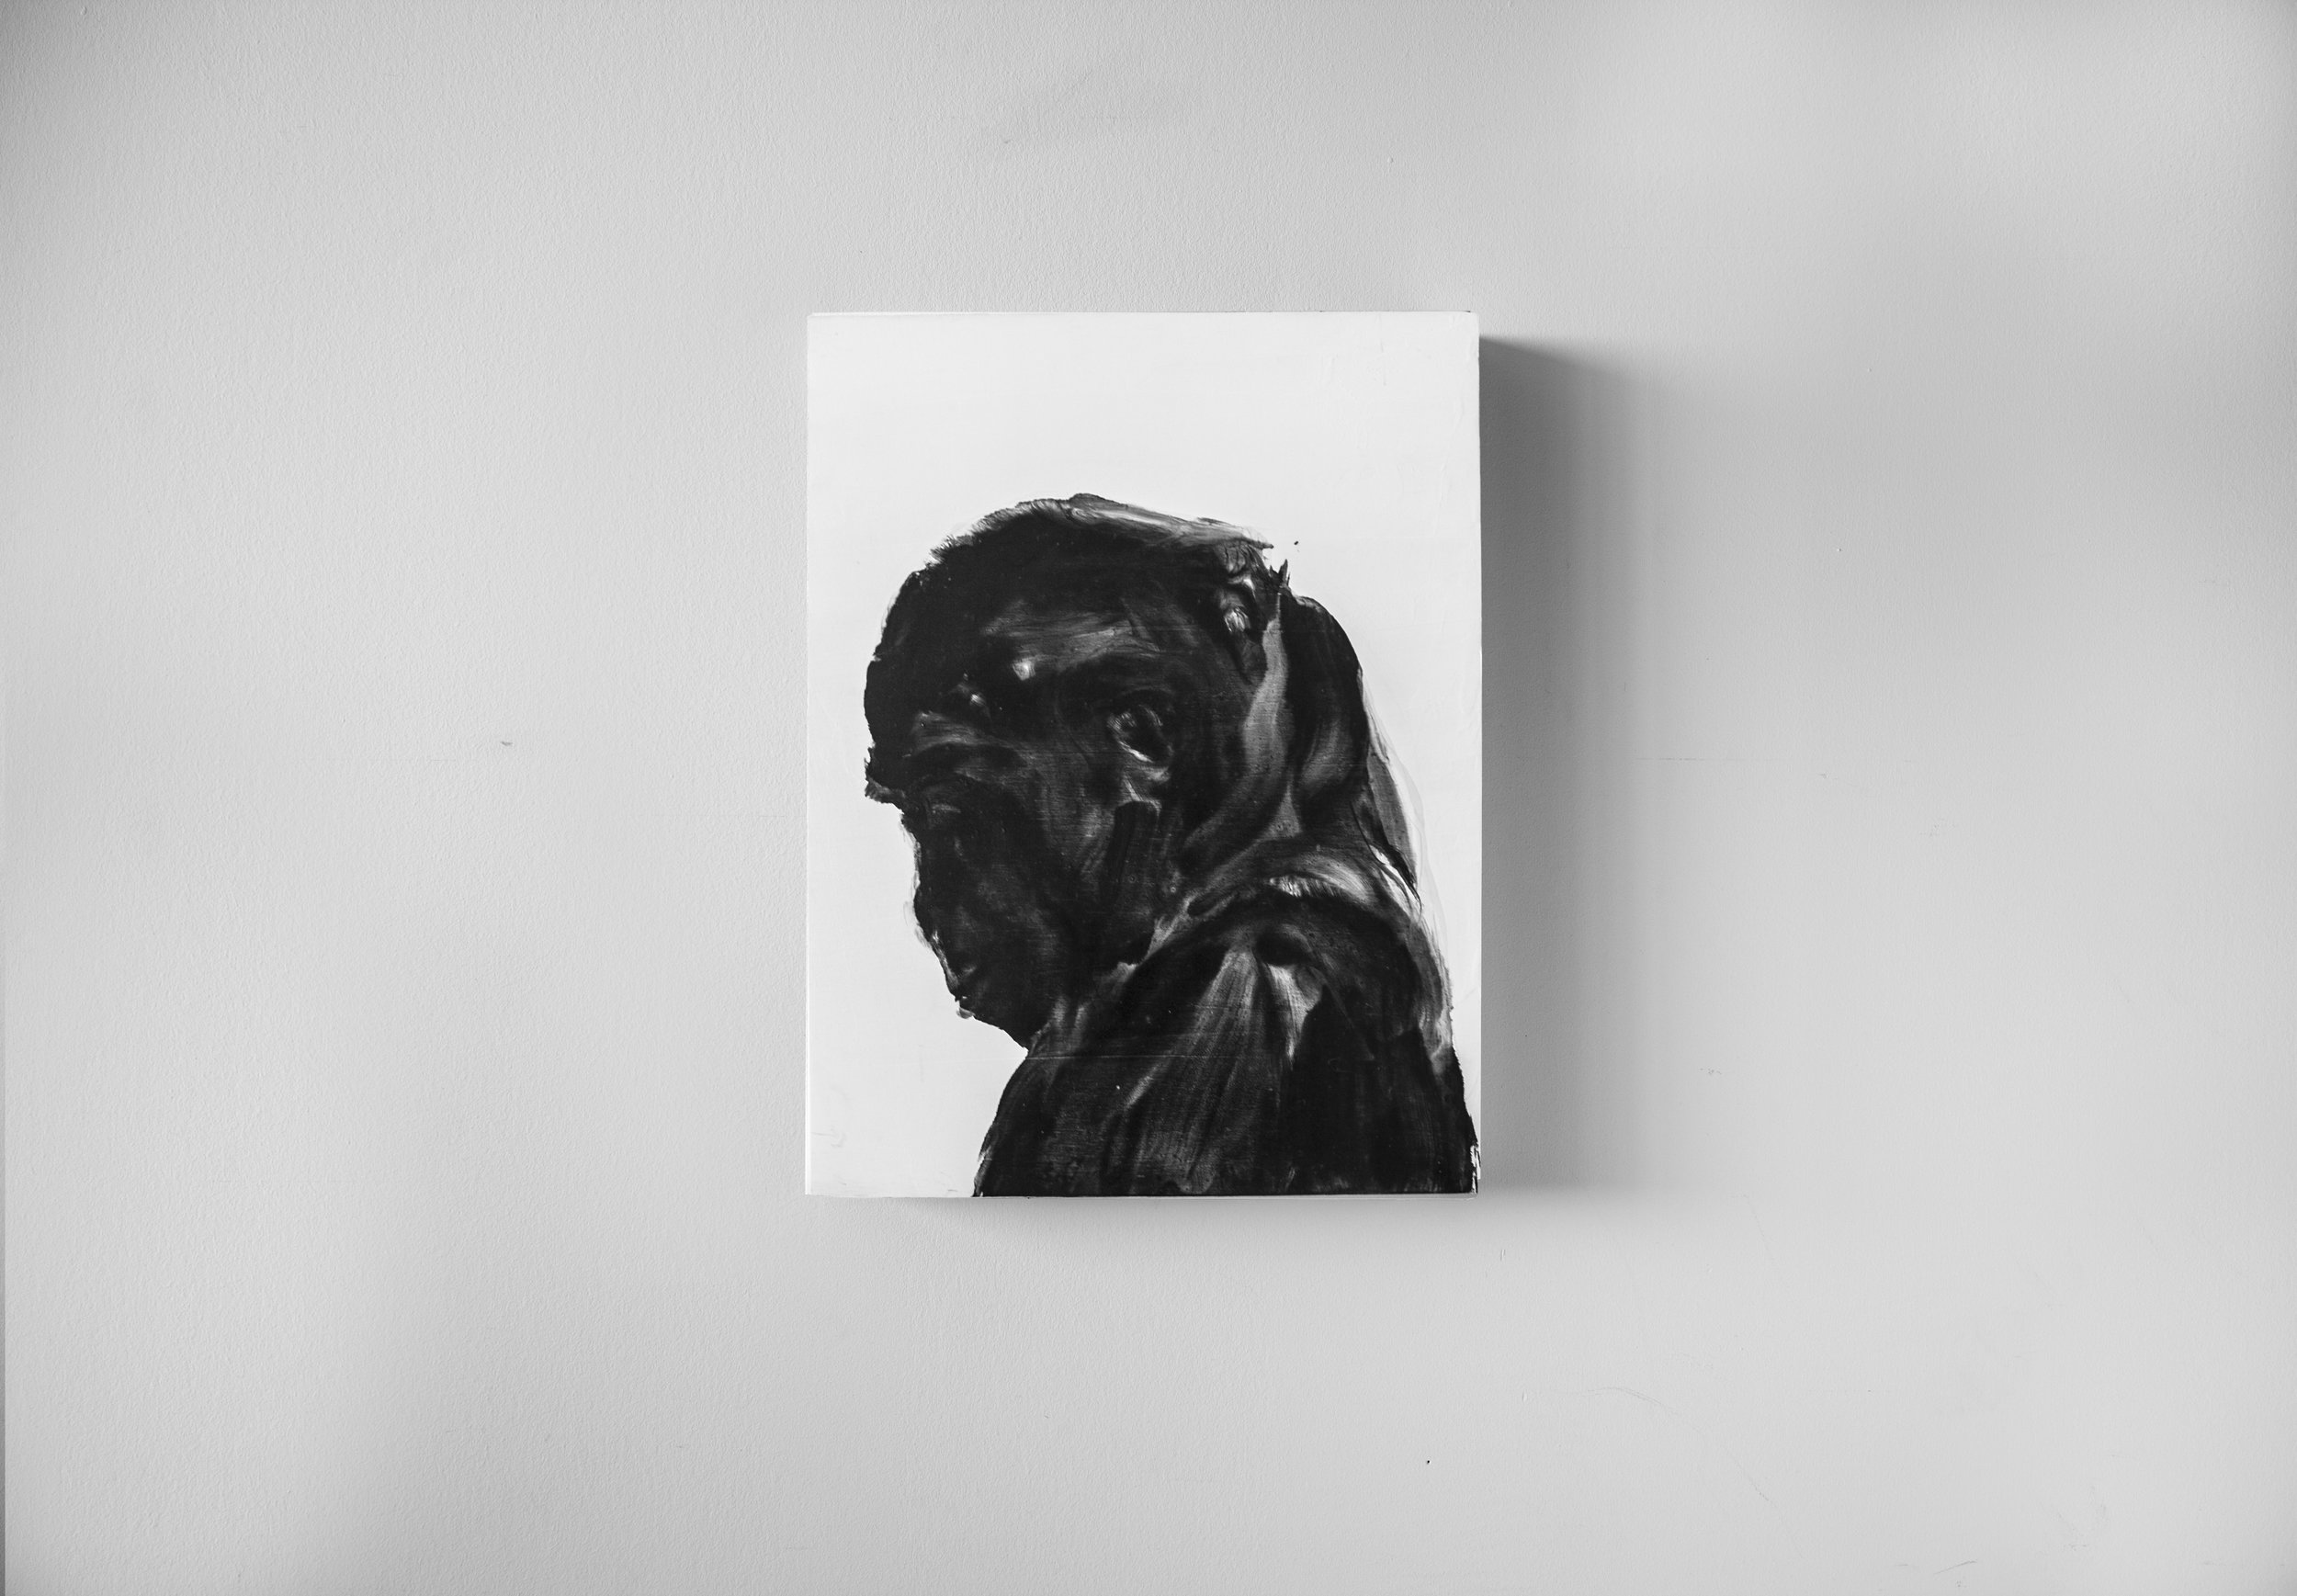  Sans titre / Untitled &nbsp;No. 1/8  Huile sur panneau / Oil on panel  12 X 16 in /&nbsp;30 X 40 cm  2015    